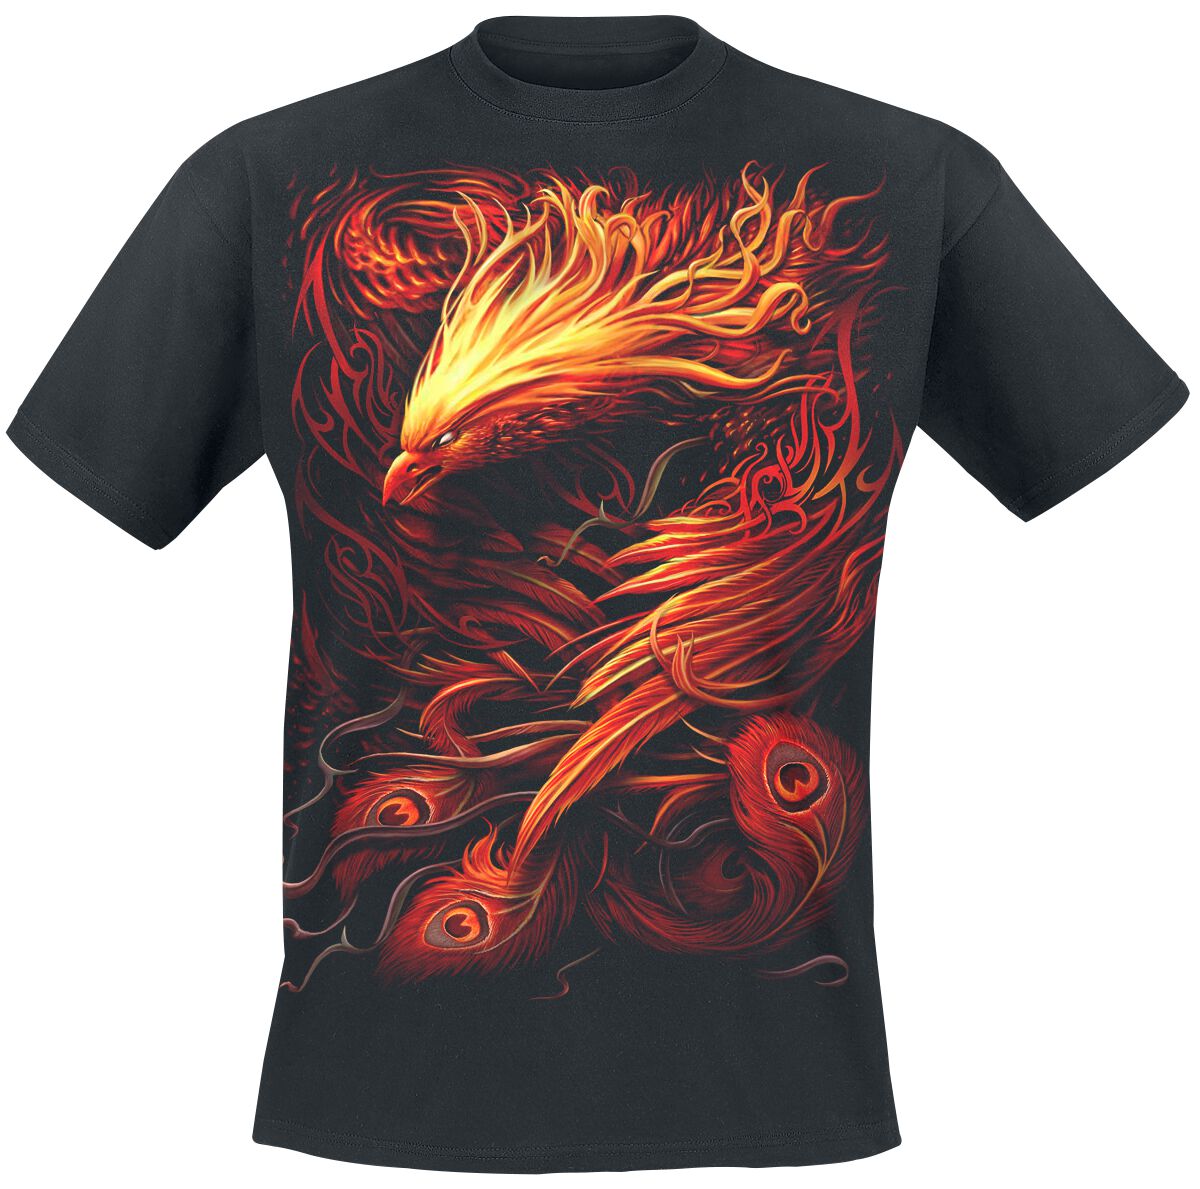 Spiral - Gothic T-Shirt - Phoenix Arisen - S bis XXL - für Männer - Größe XL - schwarz